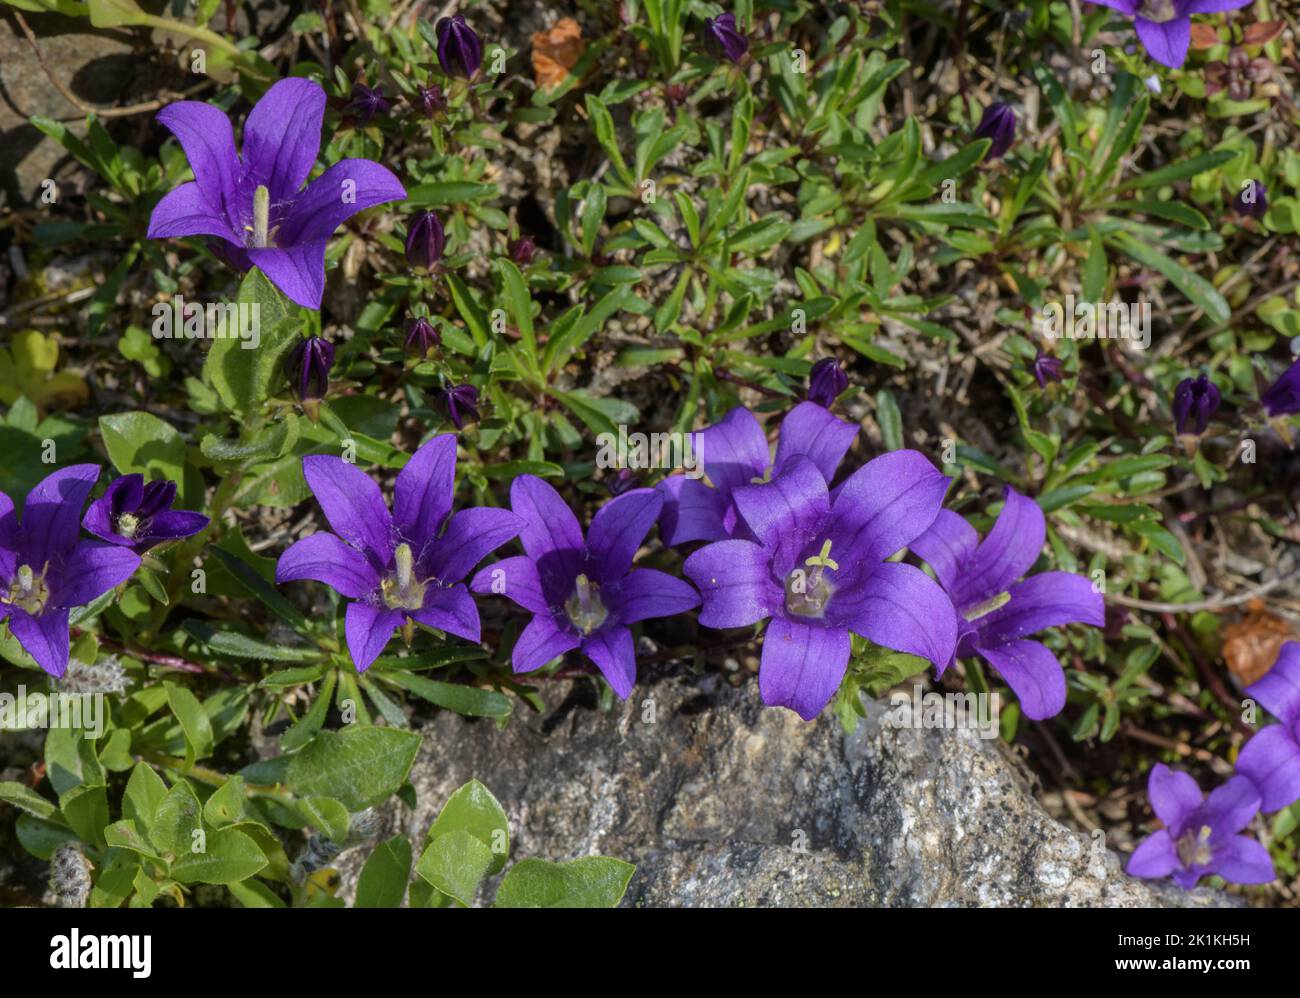 A species of rock bells or grassy bells, Edraianthus serpyllifolius from the Balkans. Stock Photo